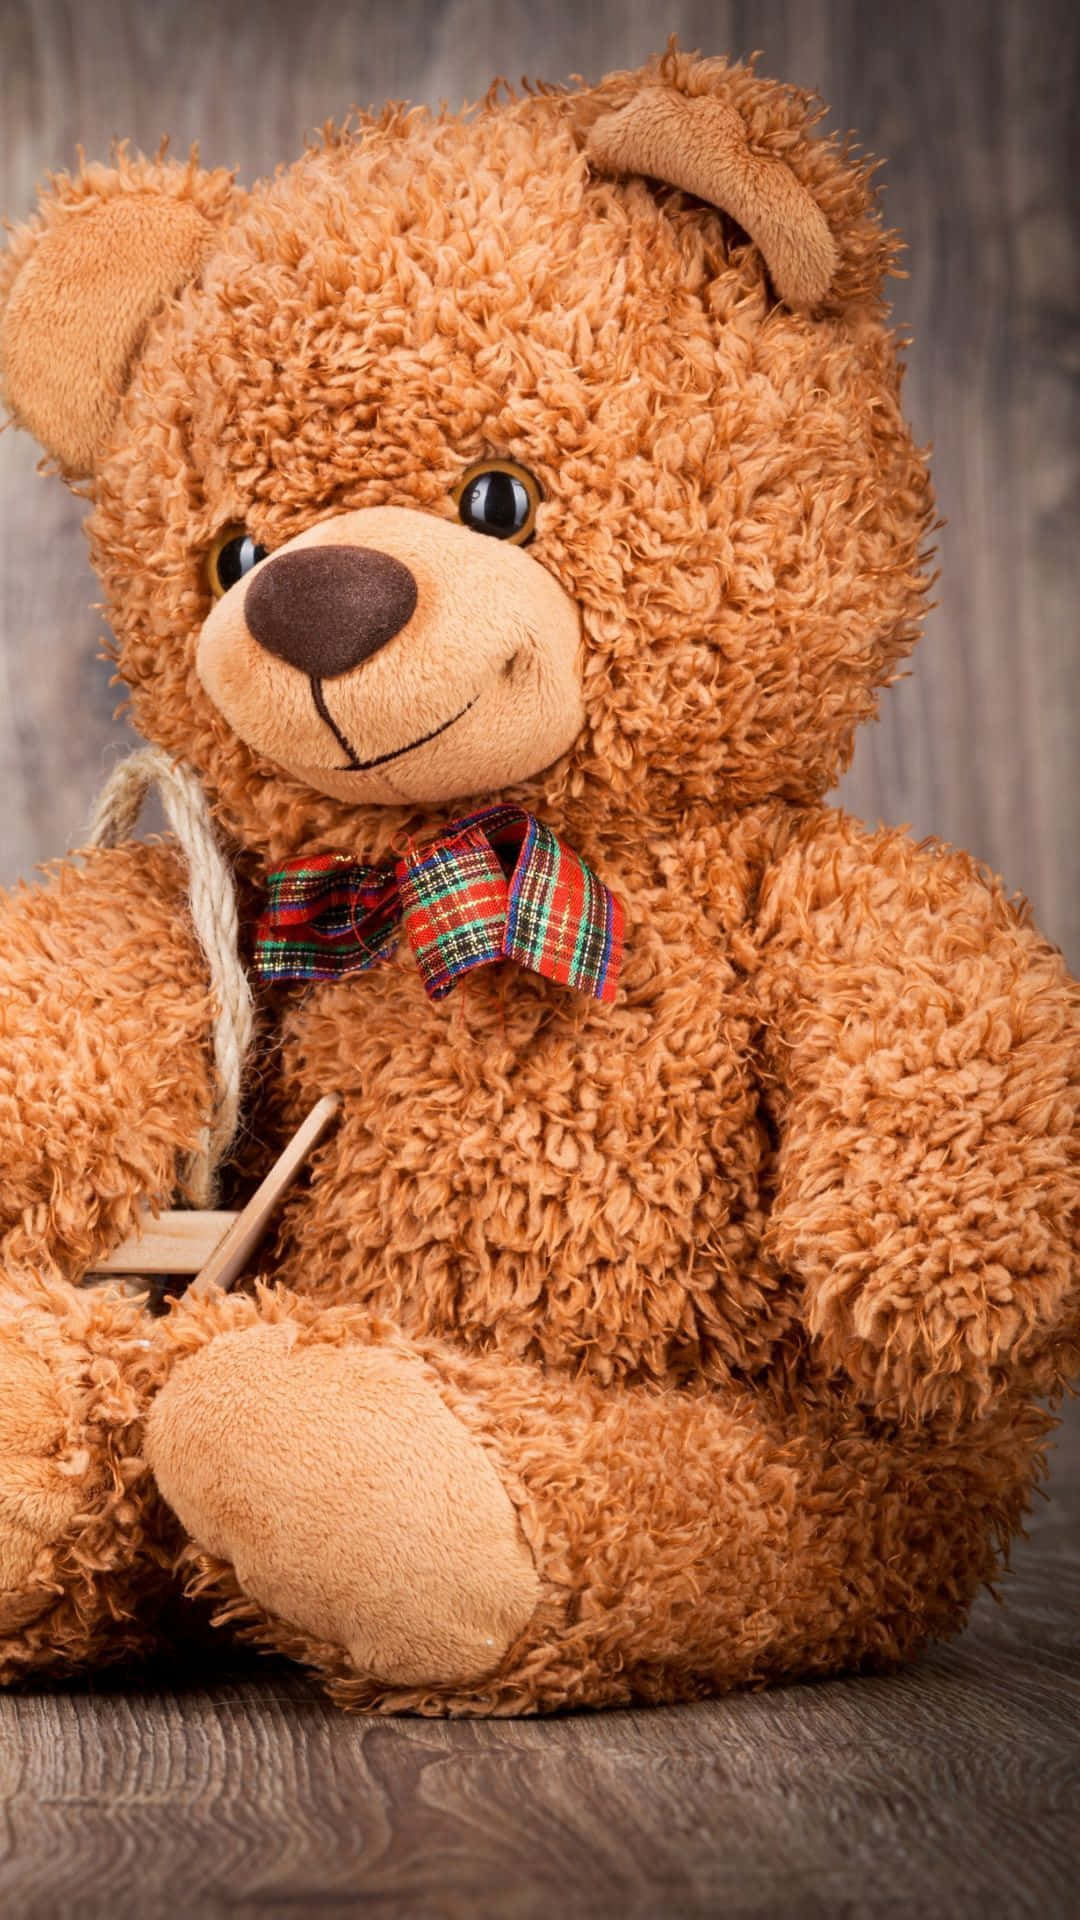 Adorable Teddy Bear On Vibrant Background